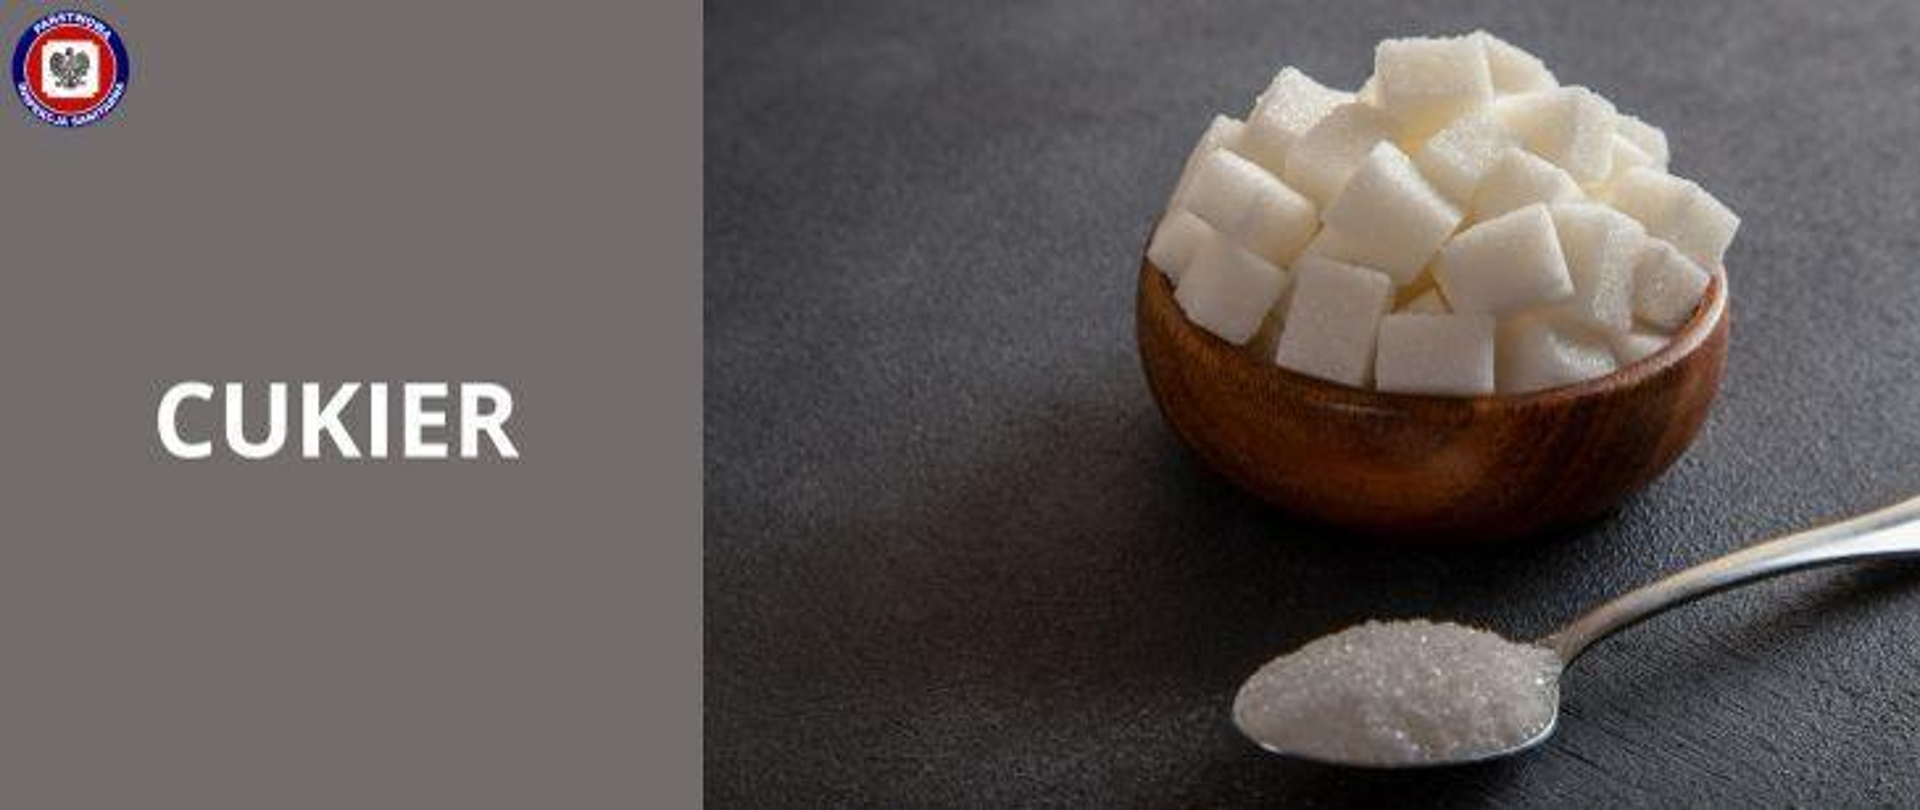 Cukier - w jaki sposób wpływa na zdrowie?